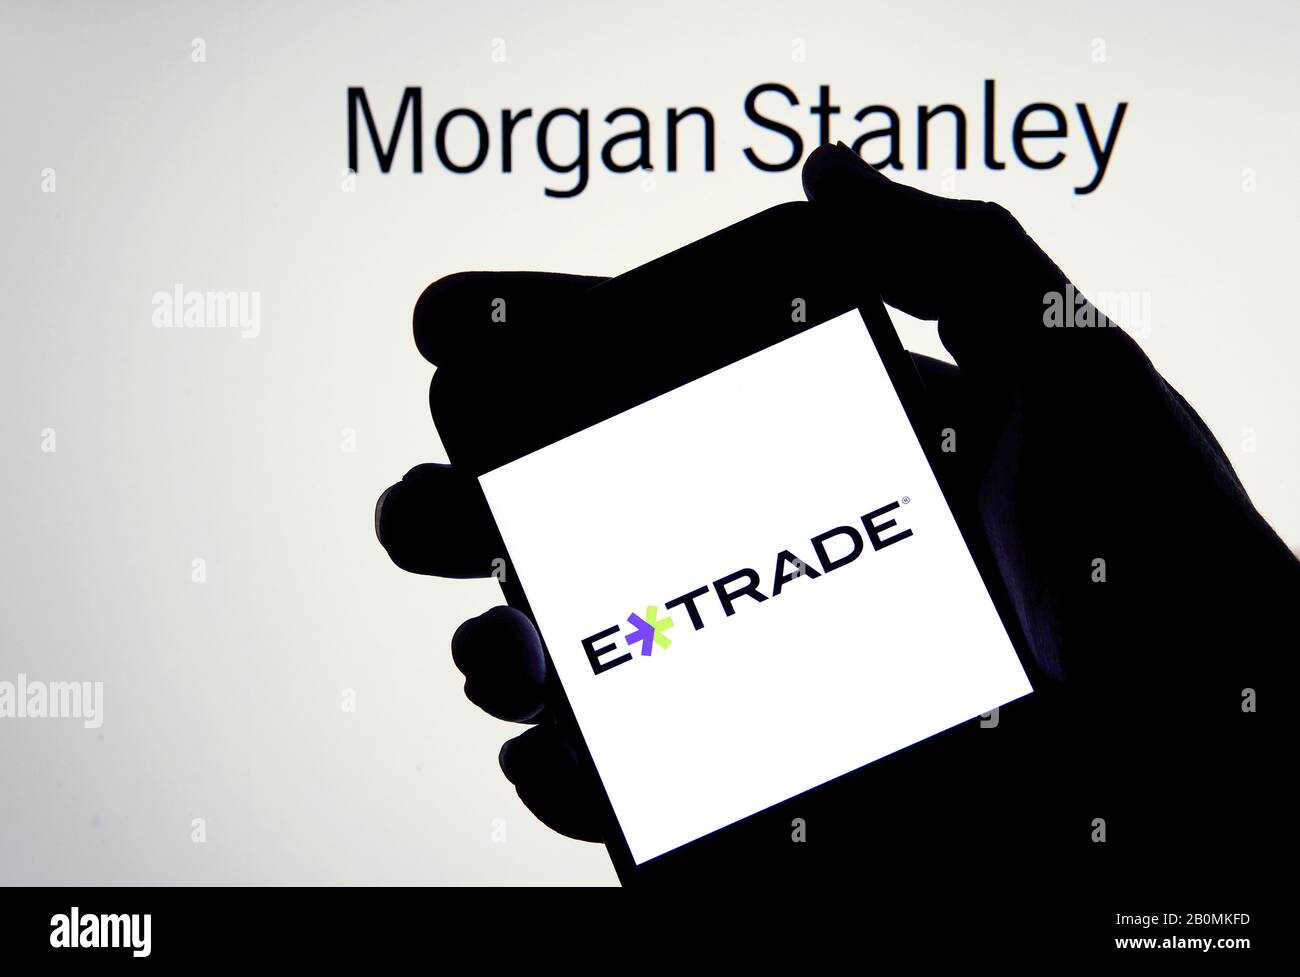 E-Trade-Logo auf einem Smartphone in einer Hand mit Morgan Stanley auf dem verschwommenen Hintergrund. Konzept für Unternehmensakquisition. Echtes Foto, keine Montage. Stockfoto